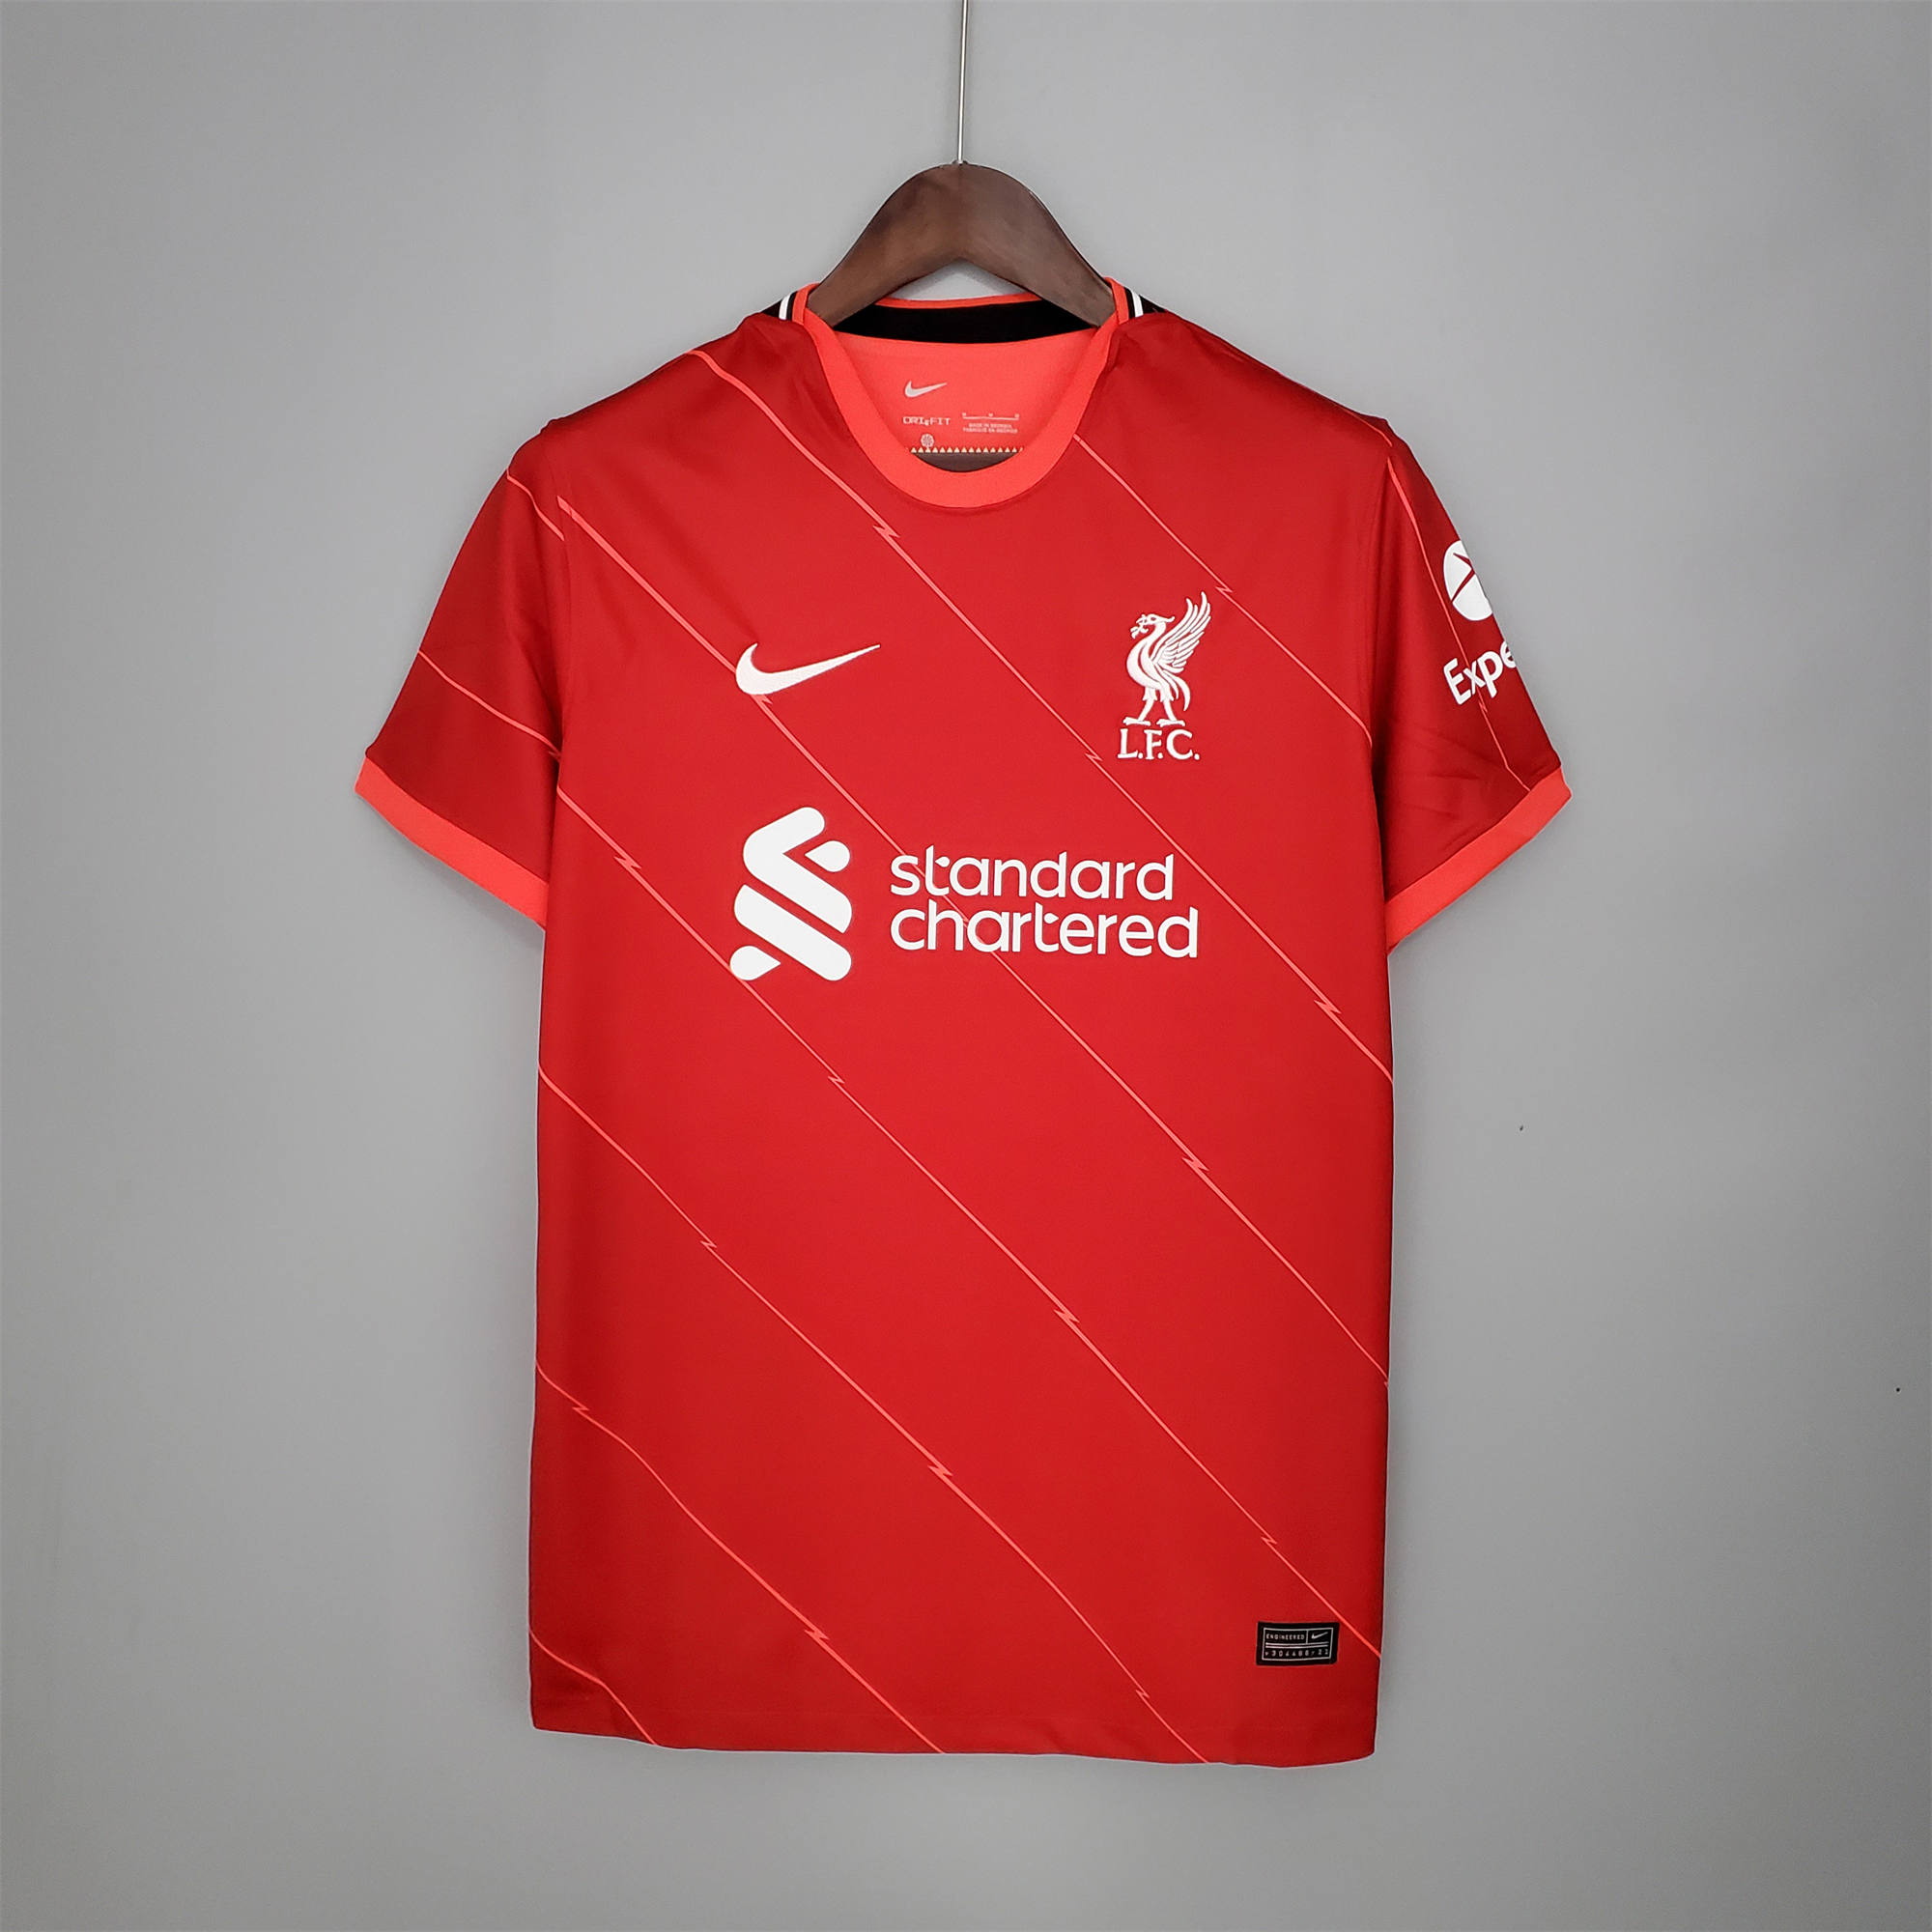 Áo thể thao in logo Liverpool 21-22 thời trang năng động